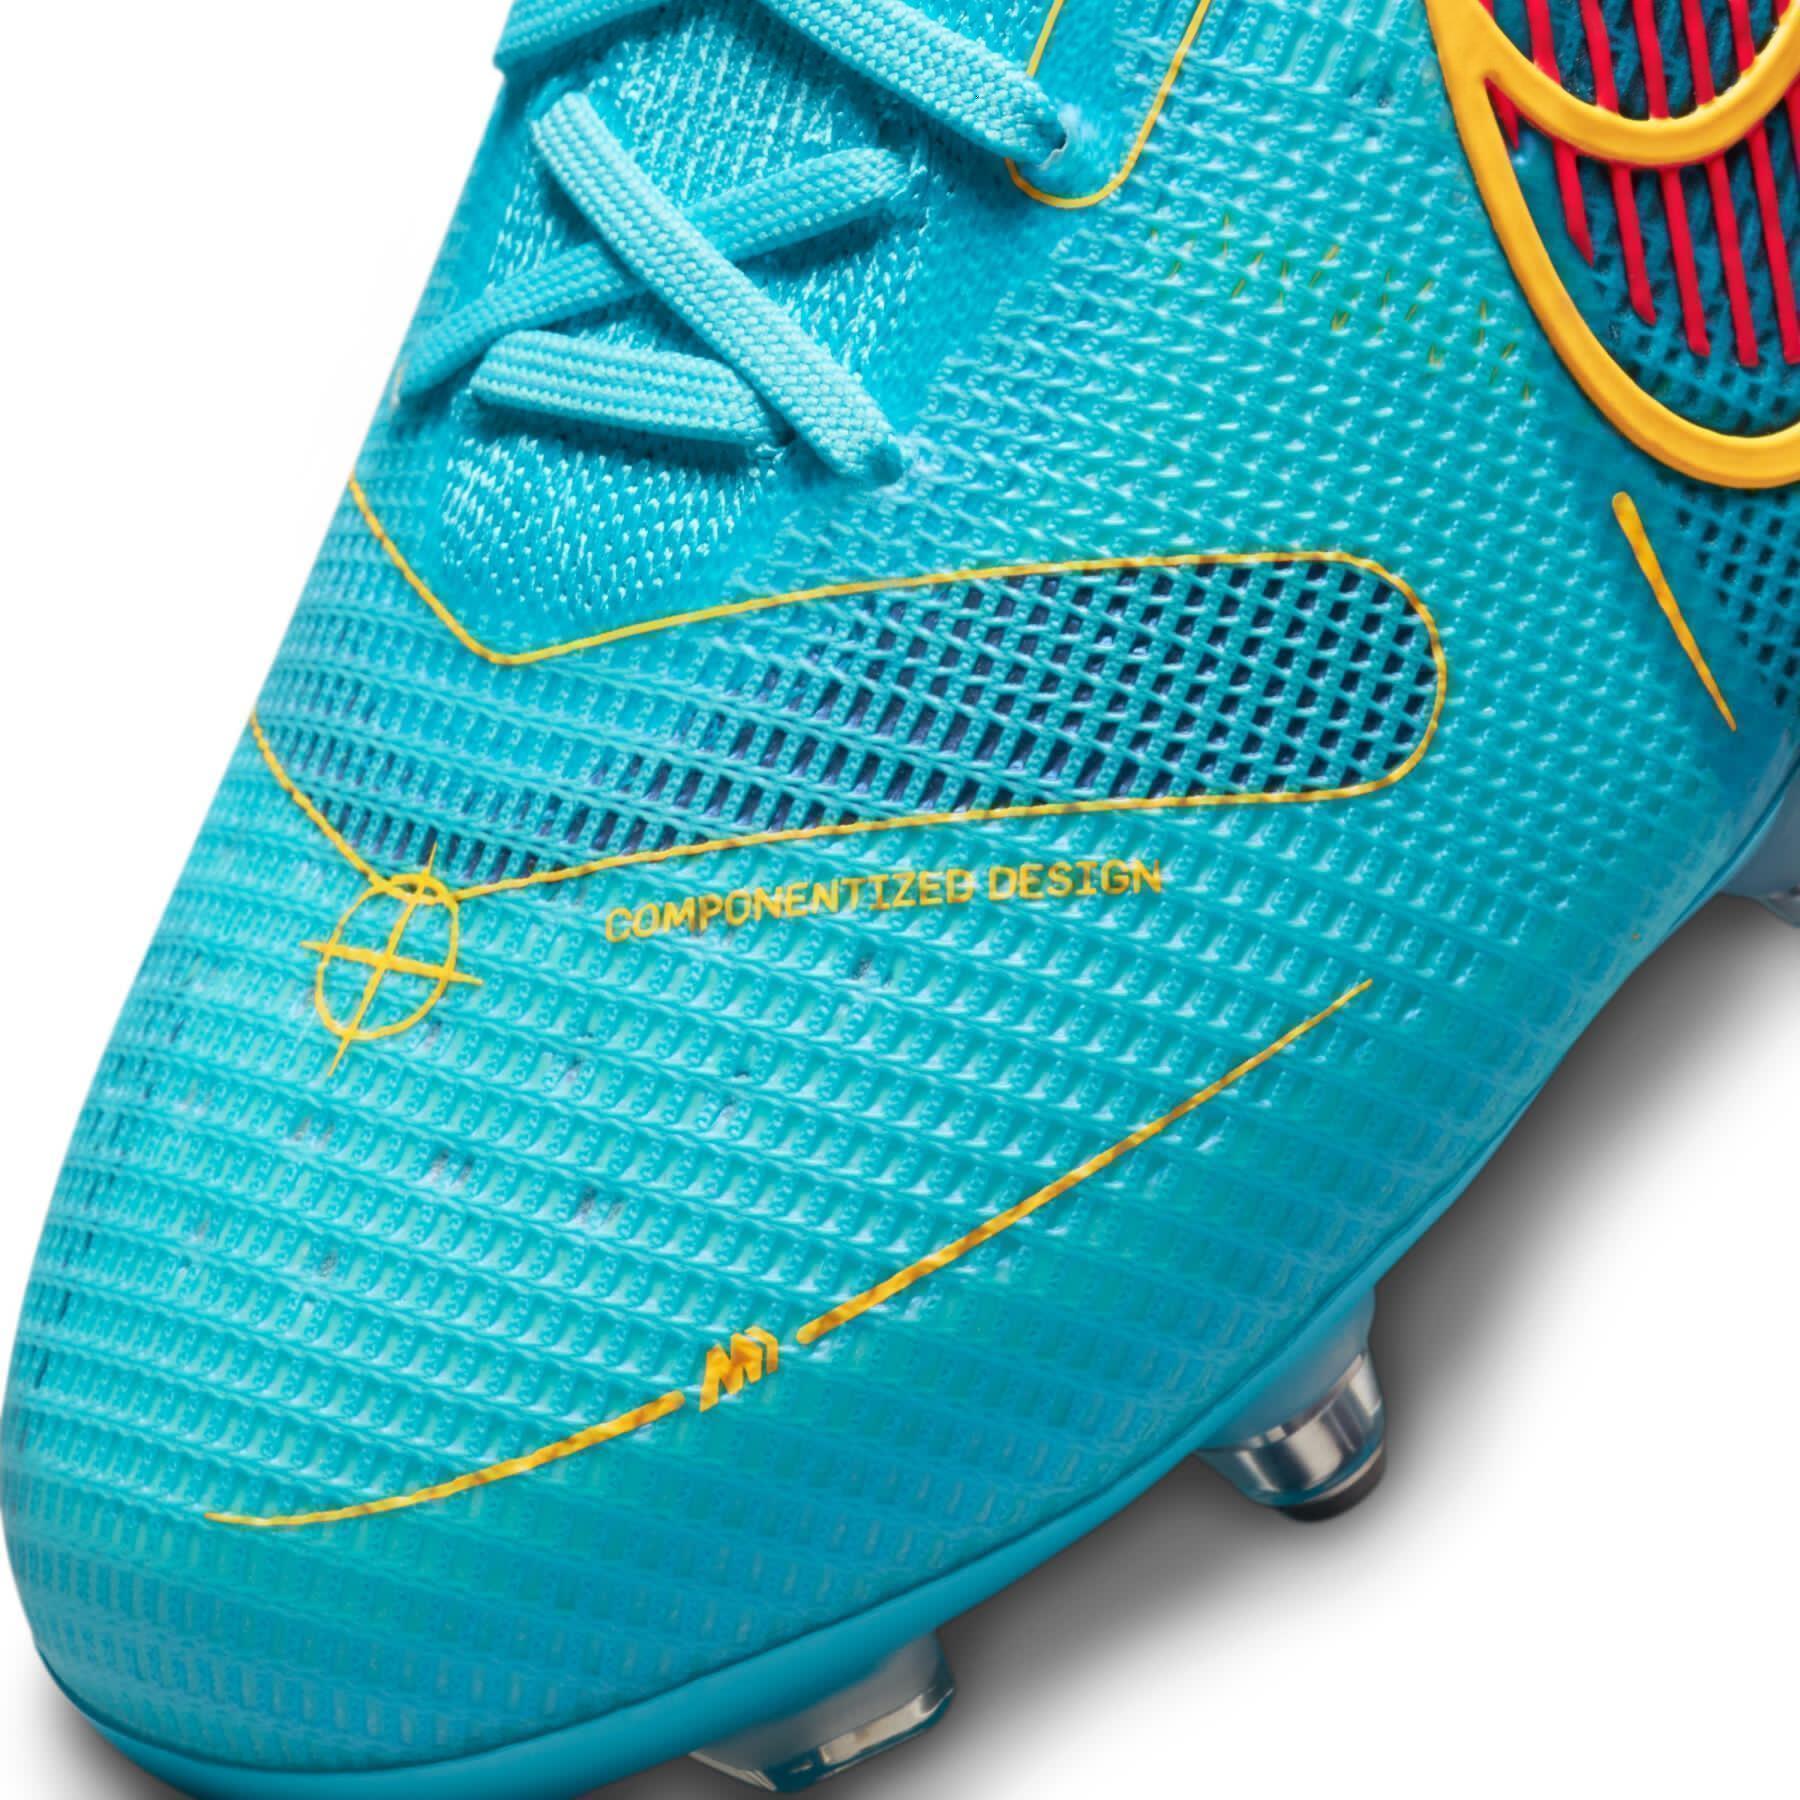 Sapatos de futebol Nike Mercurial Vapor 14 Élite SG-PRO -Blueprint Pack